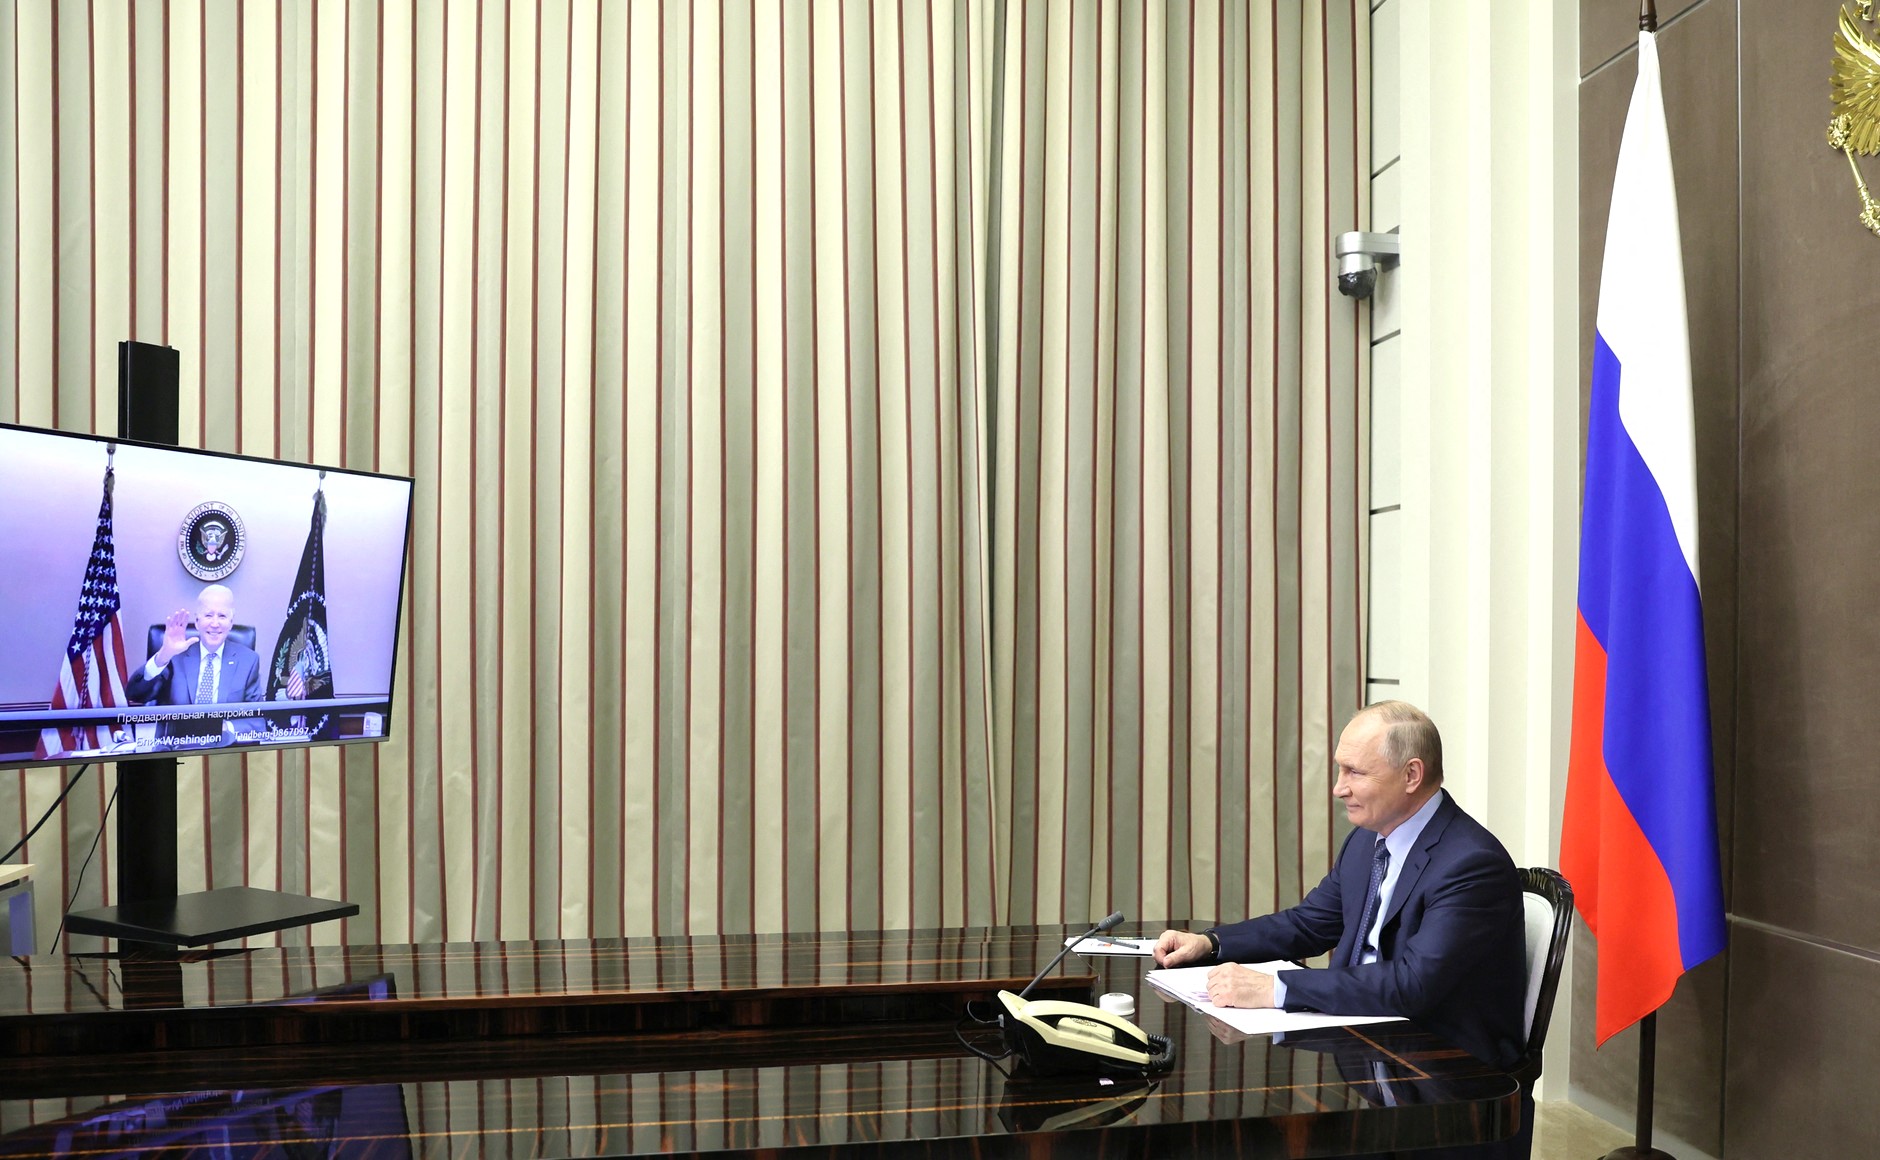 Putyin figyelmeztette Bident, hogy az újabb szankciók miatt megromolhat a kapcsolat